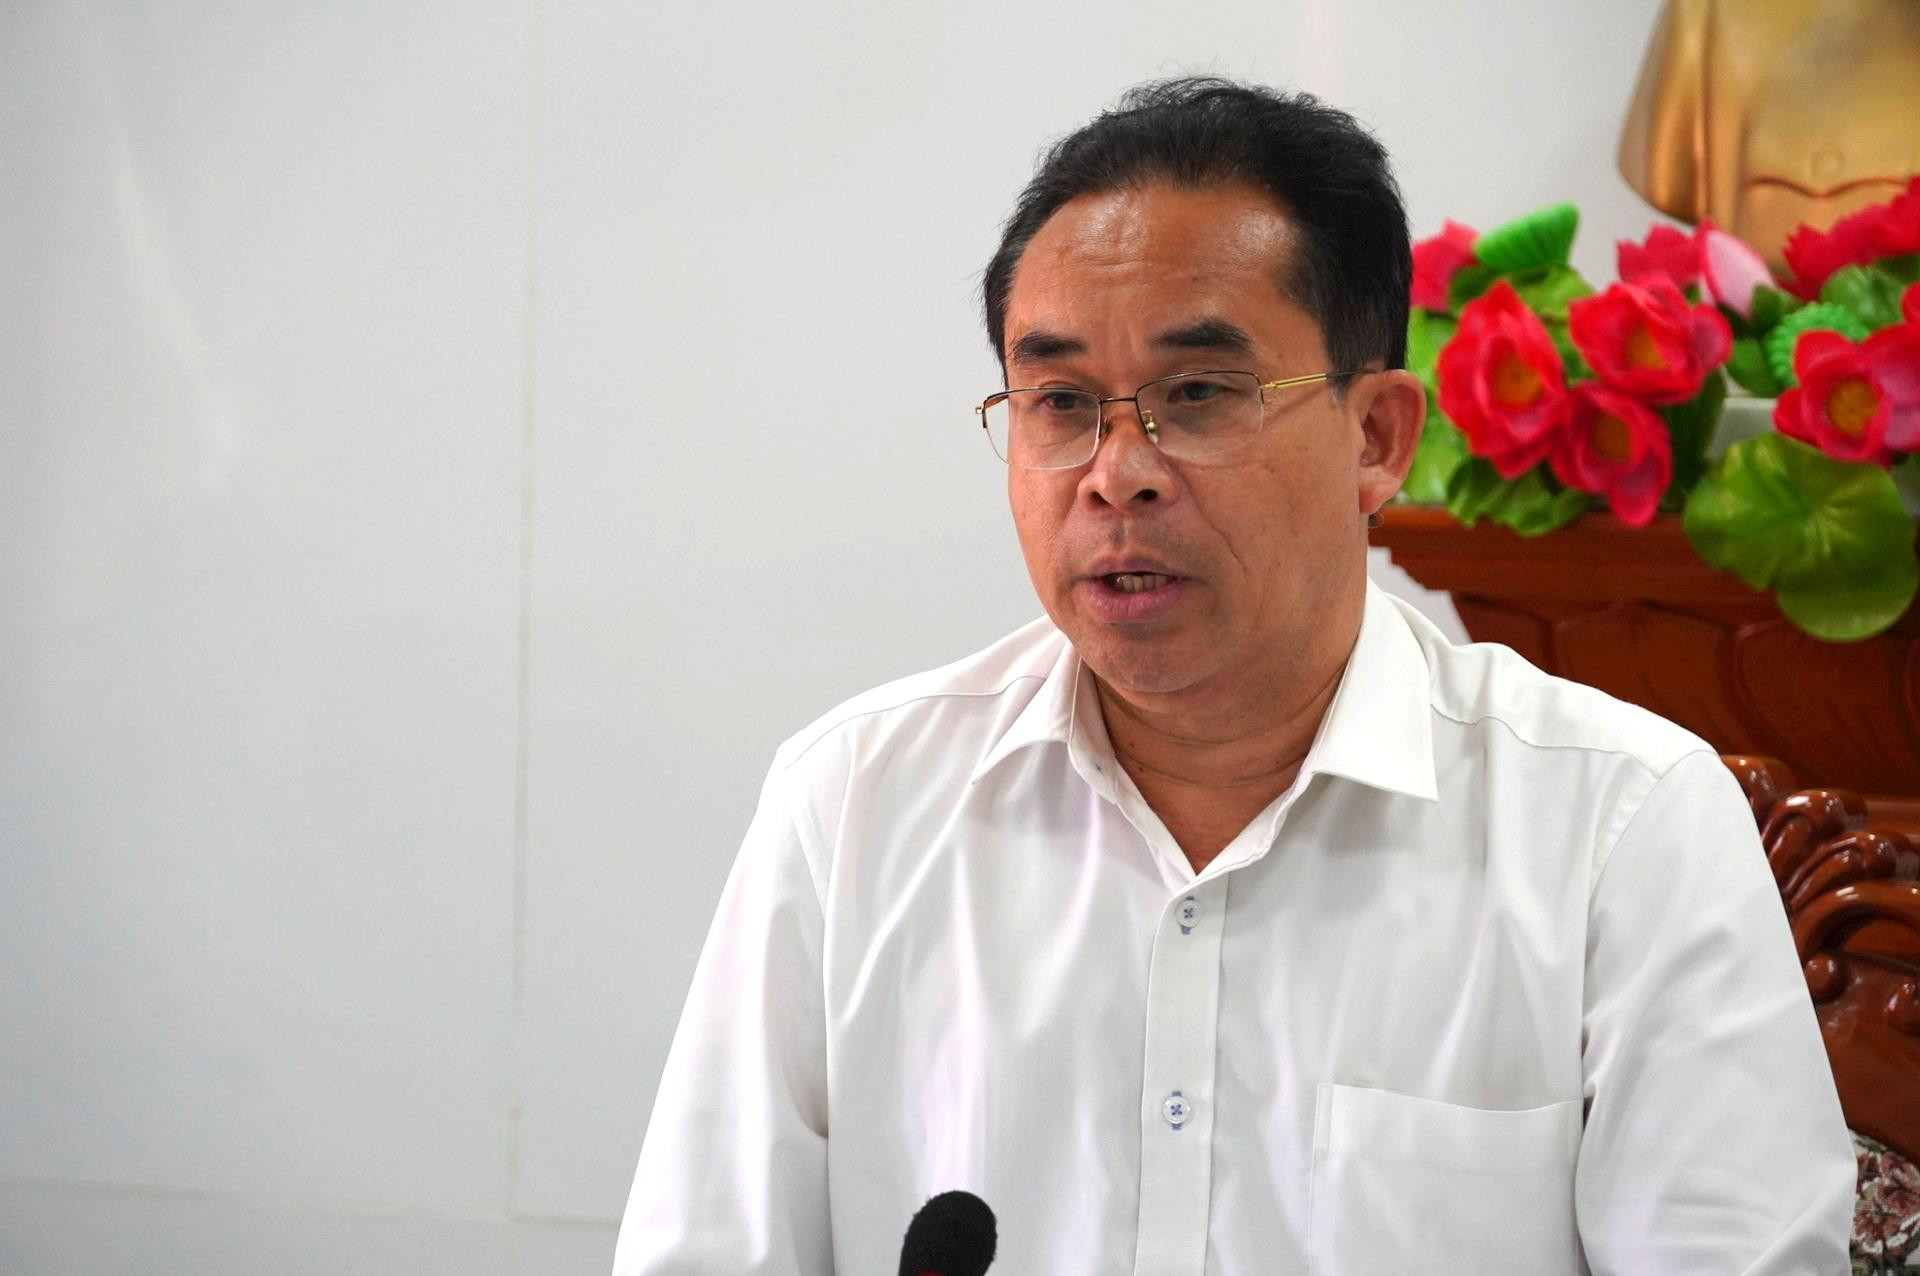 Phó Chủ tịch UBND tỉnh Trần Anh Tuấn chỉ đạo một số nội dung chuẩn bị tốt cho đại hội điểm. Ảnh: D.L